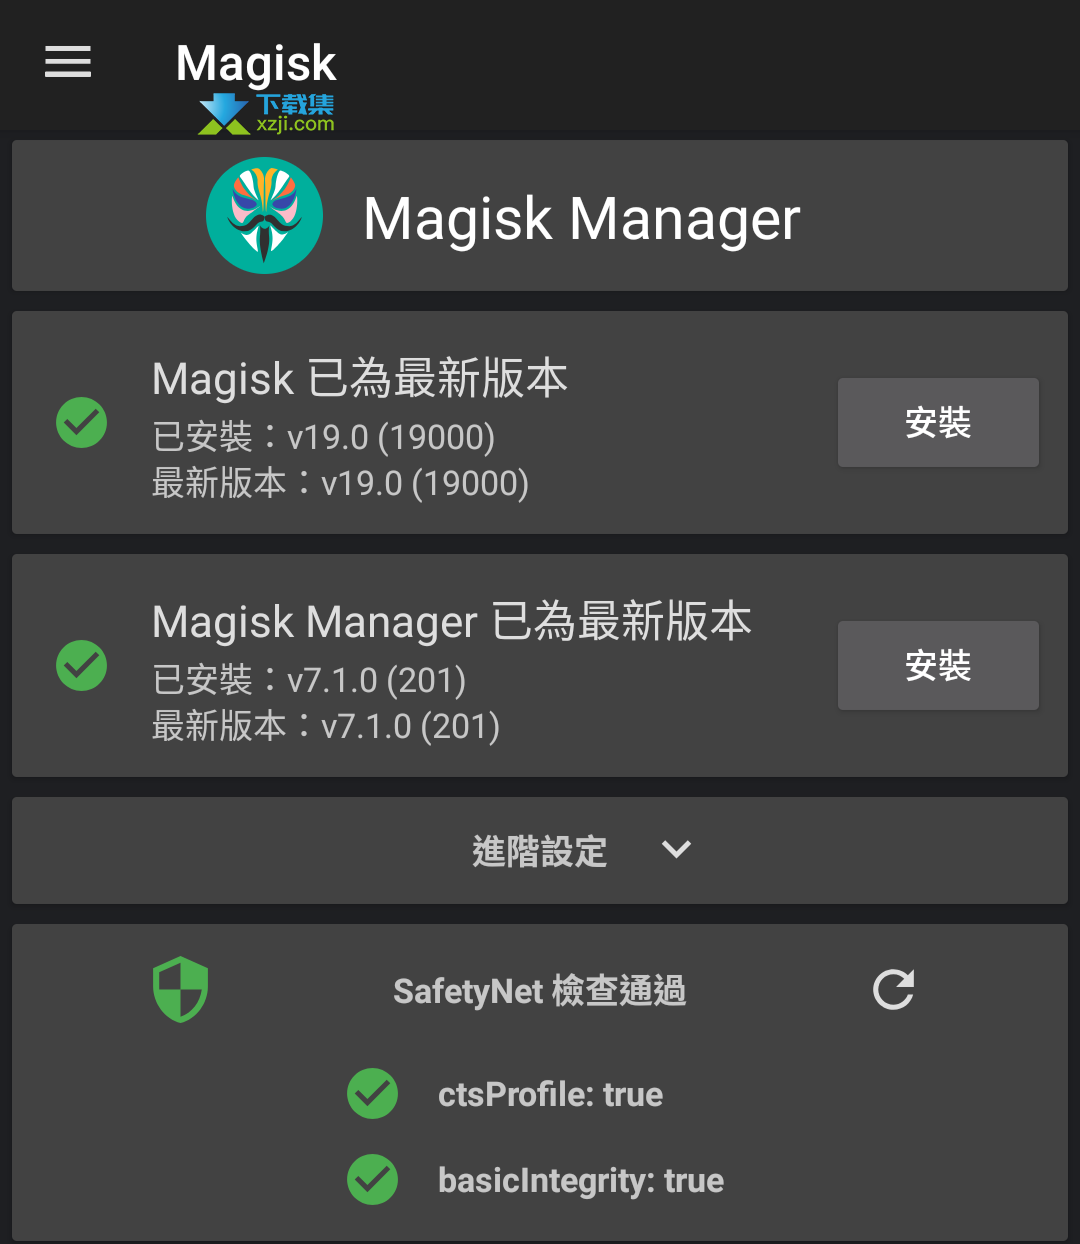 Magisk Manager界面1